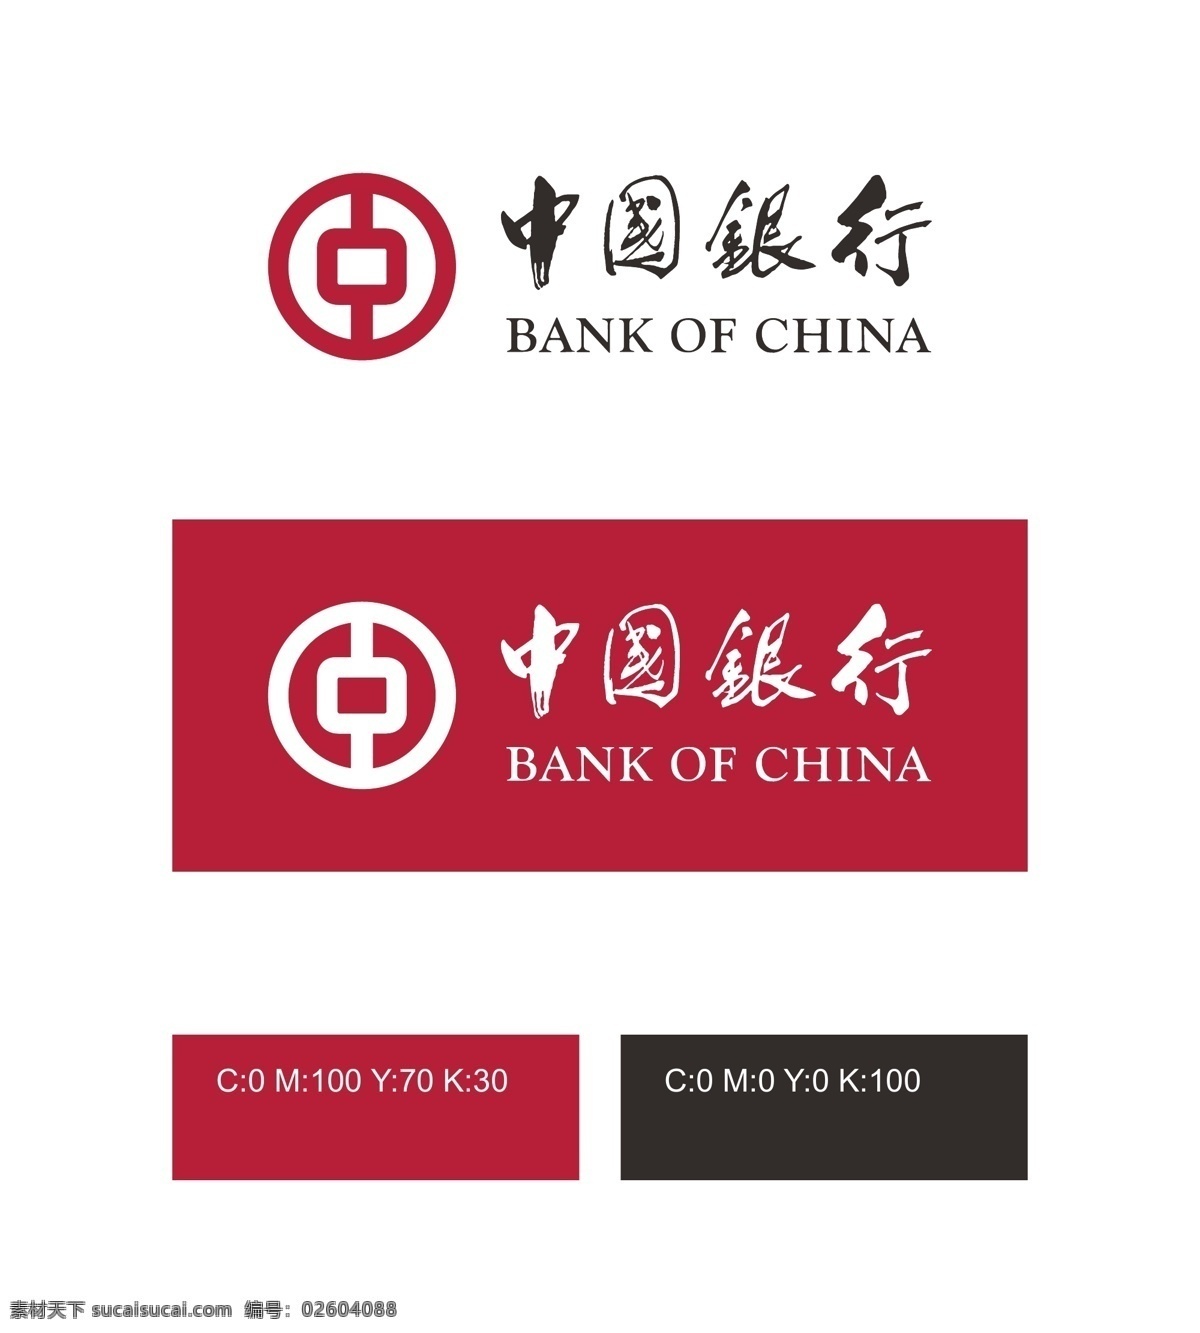 中国银行 logo 金融logo 企业logo 矢量logo logo设计